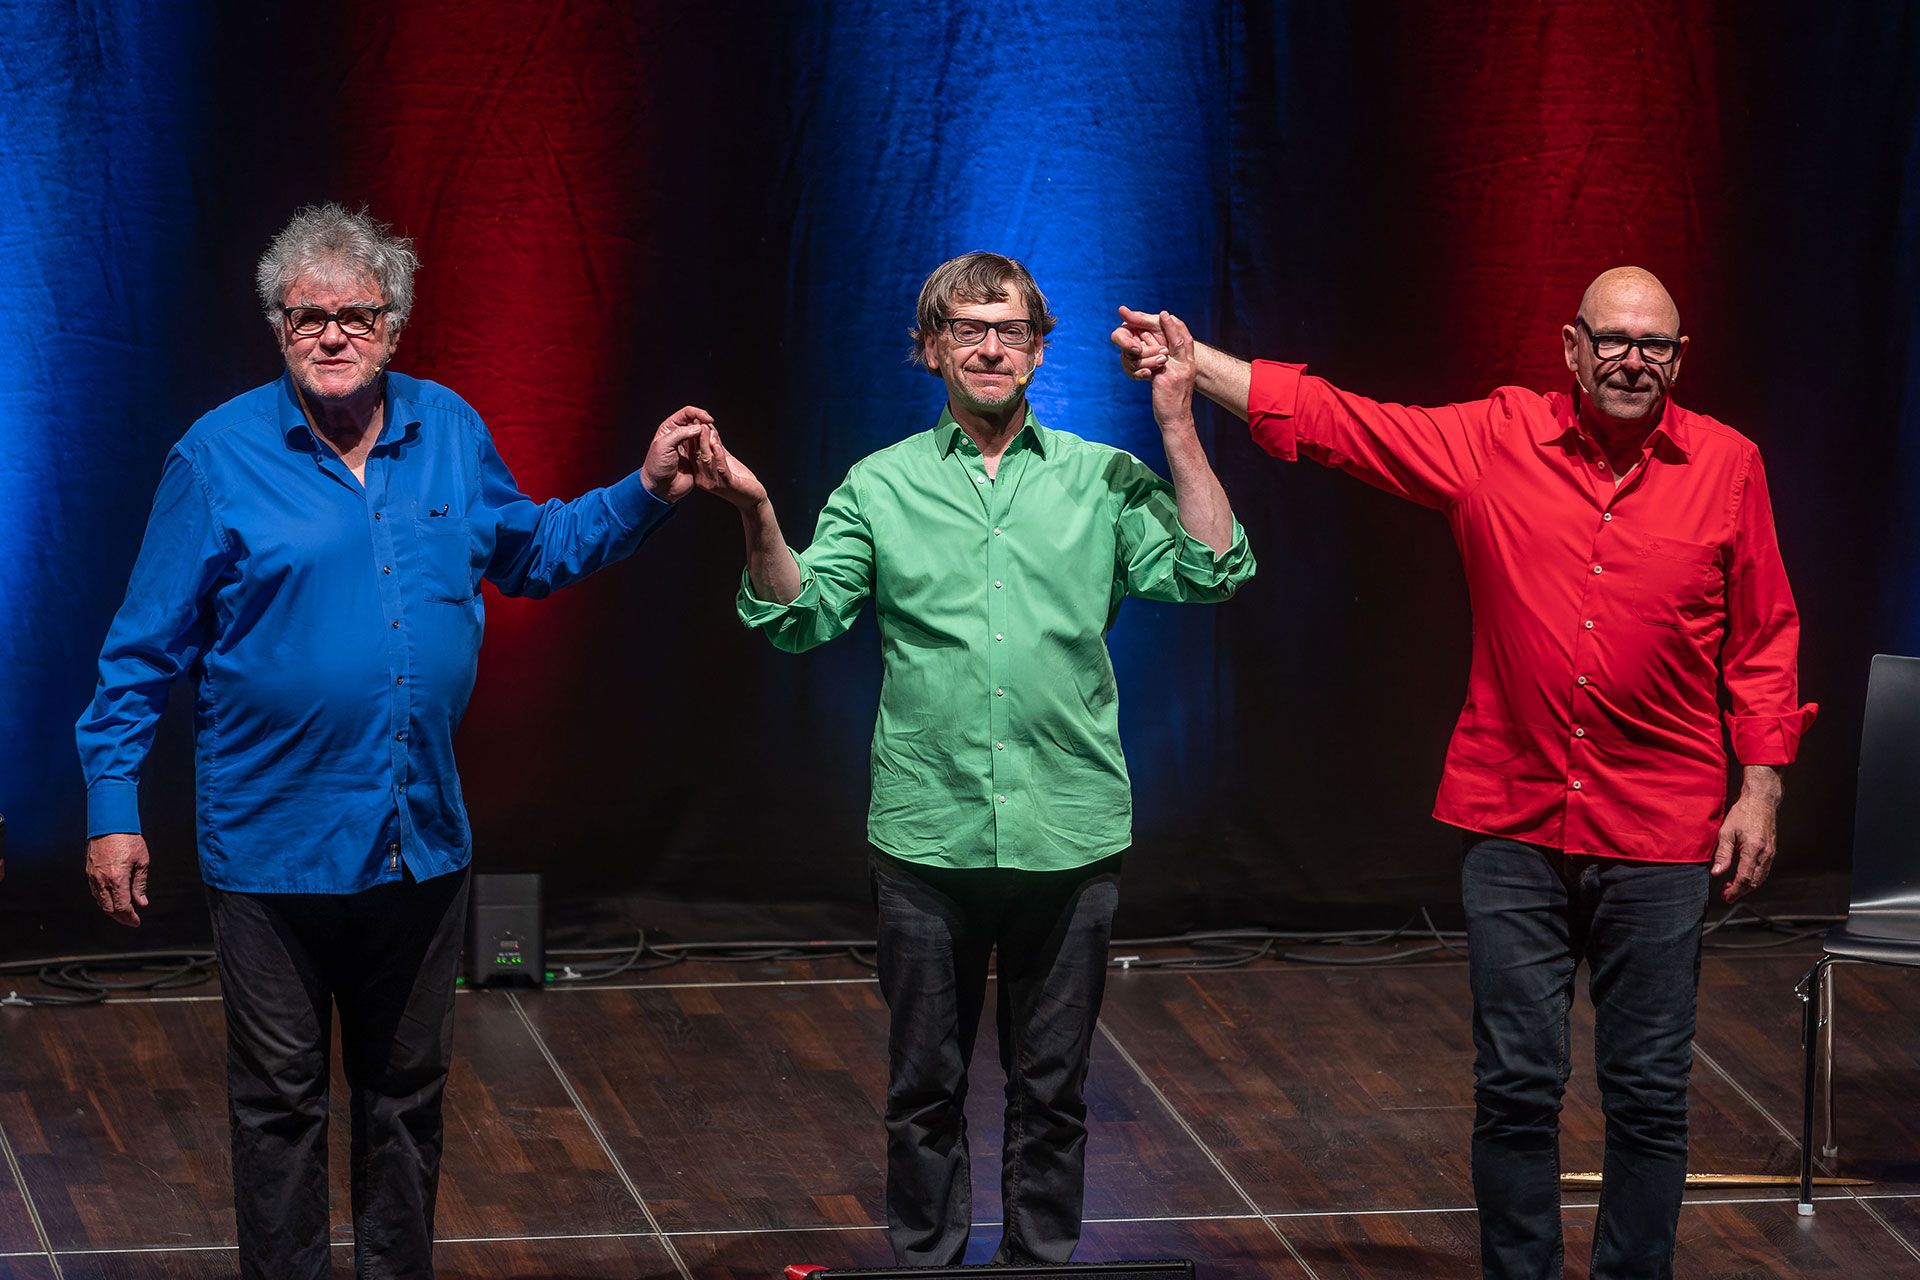 Volkmar Staub, Günter Fortmeier und Frank Sauer traten bei der Heinz Erhardt Show am 20.5.2022 im Strawinsky Saal auf